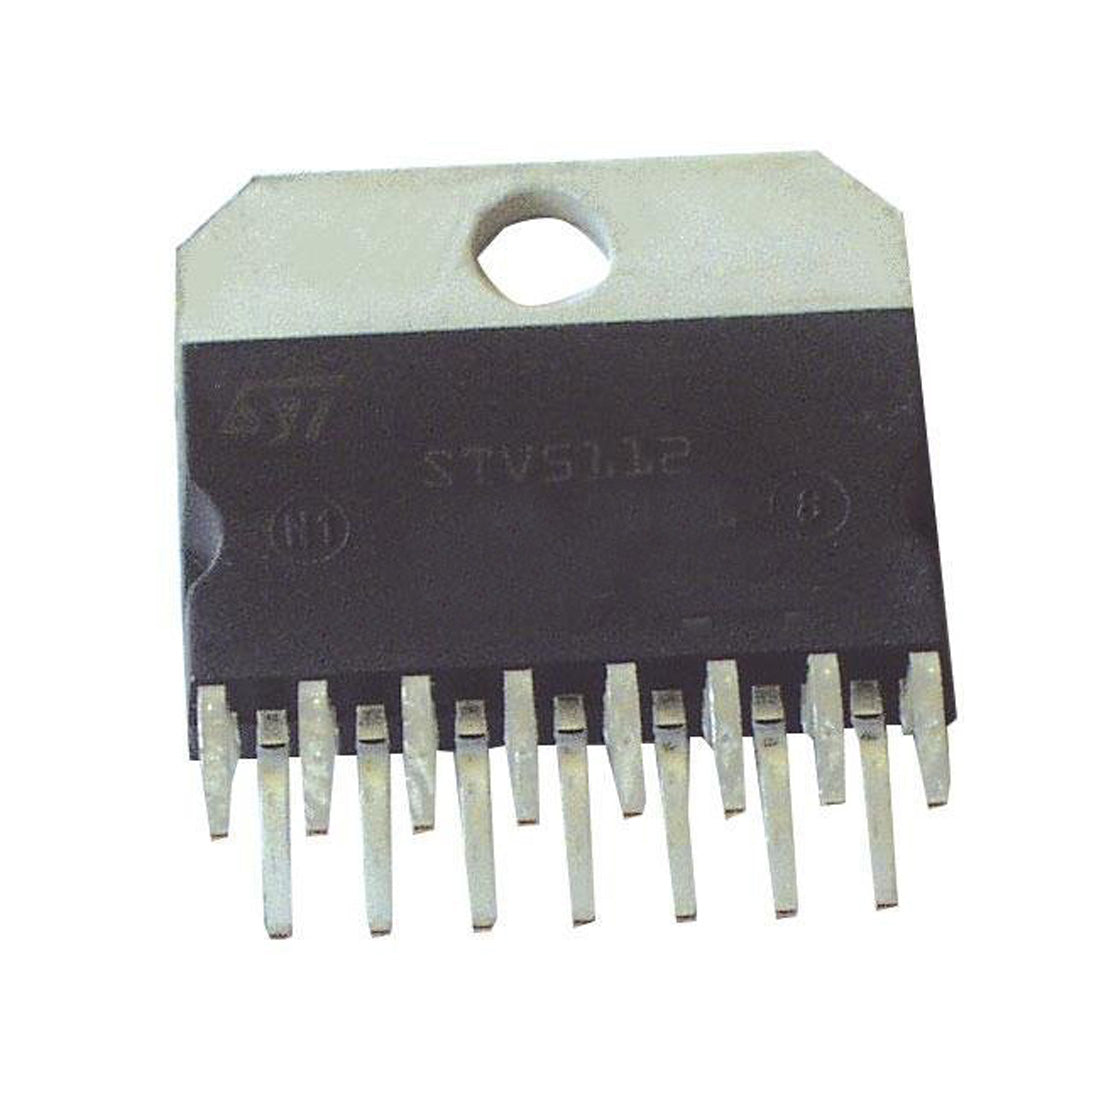 STM STV5112 Componente elettronico, circuito integrato, transistor, 15 contatti